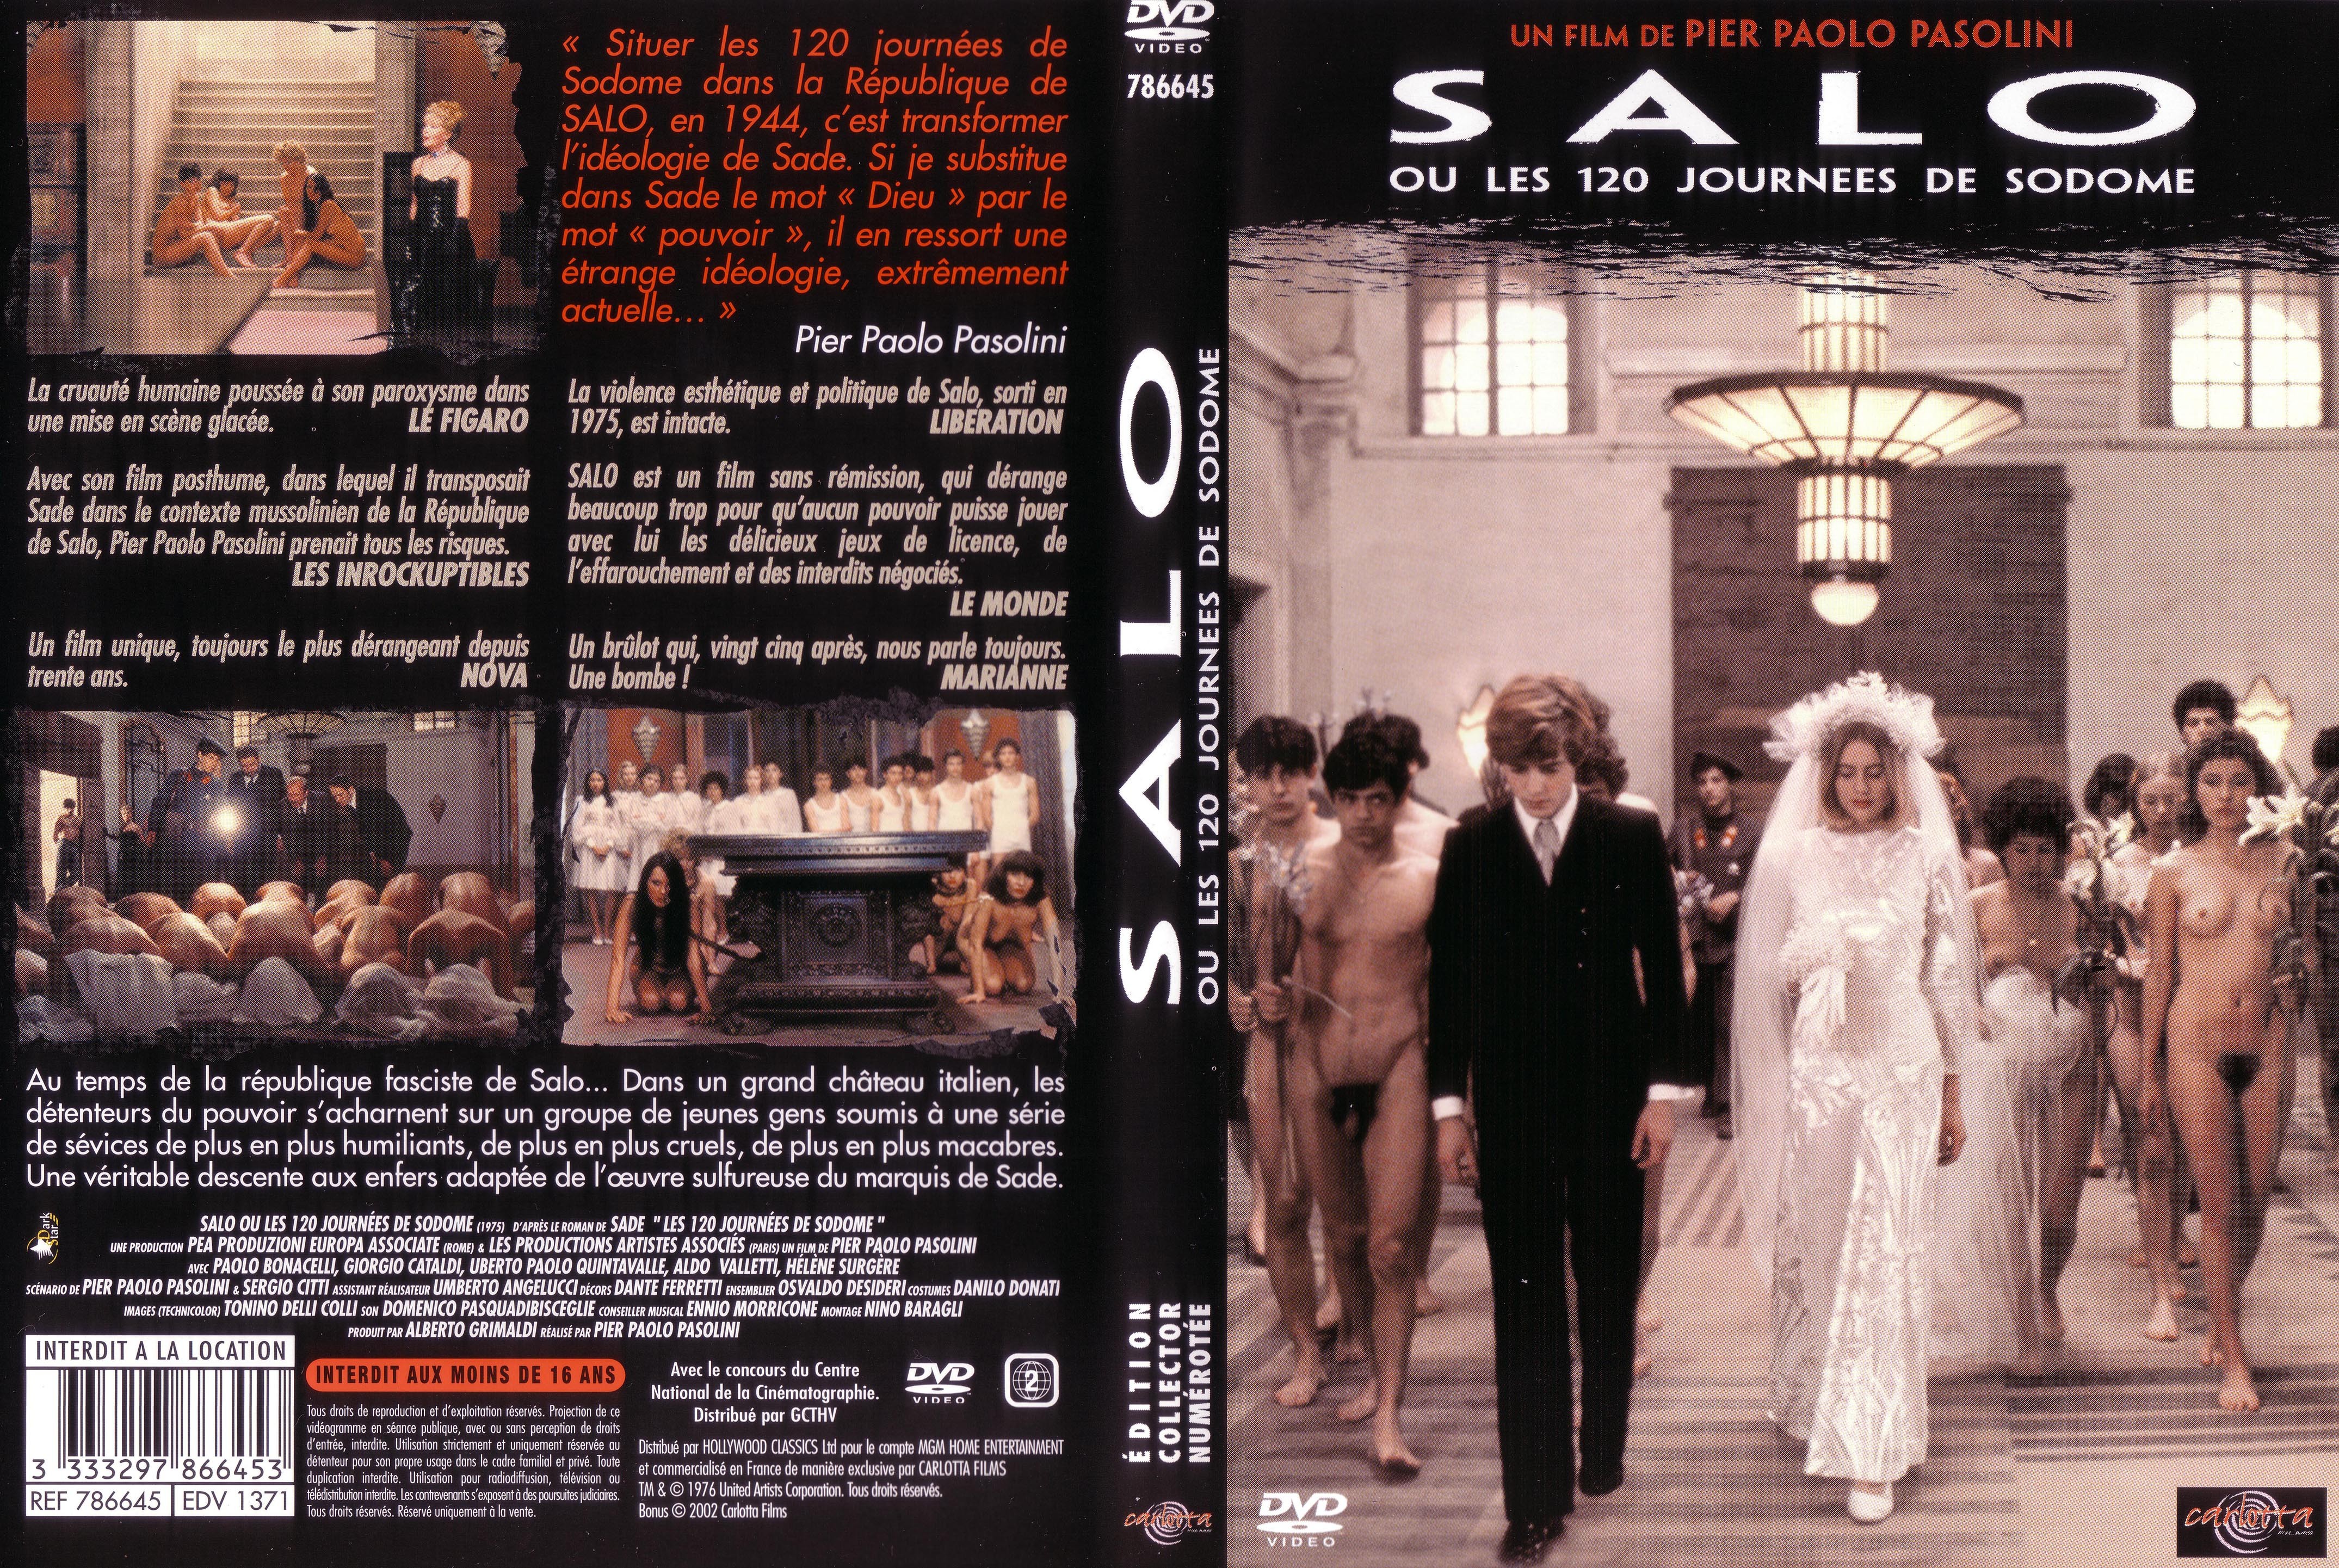 Jaquette DVD de Salo ou les 120 journées de sodome - Cinéma Passion